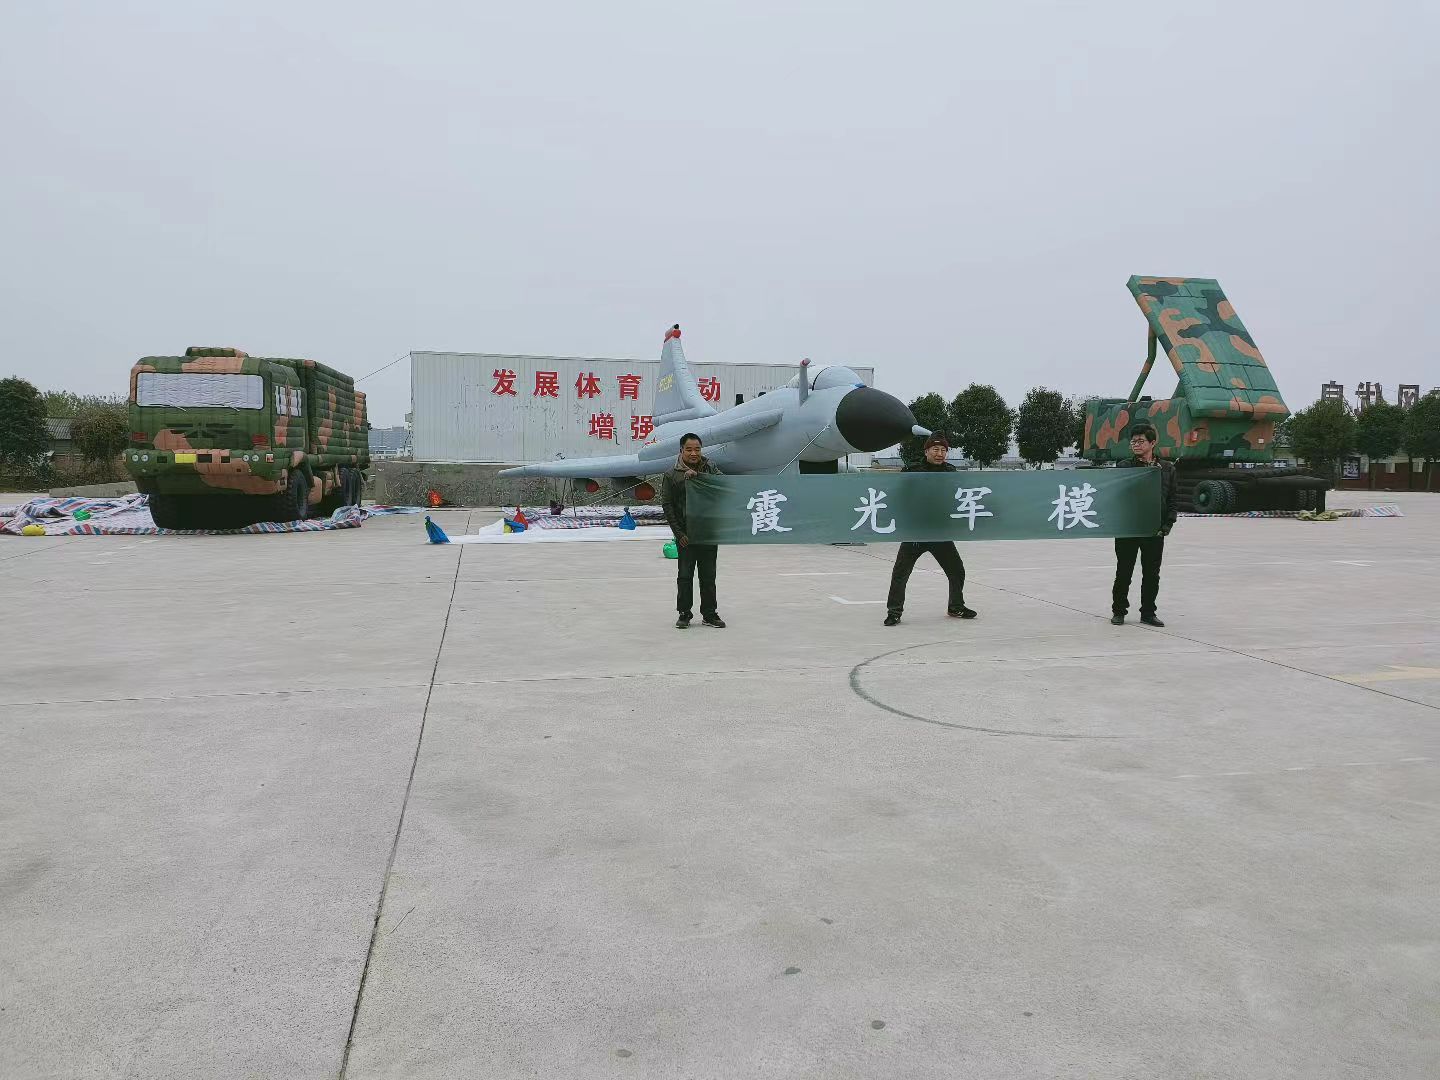 重庆专家称引发关注的无人飞艇或为探空气球:主要用于气象观测